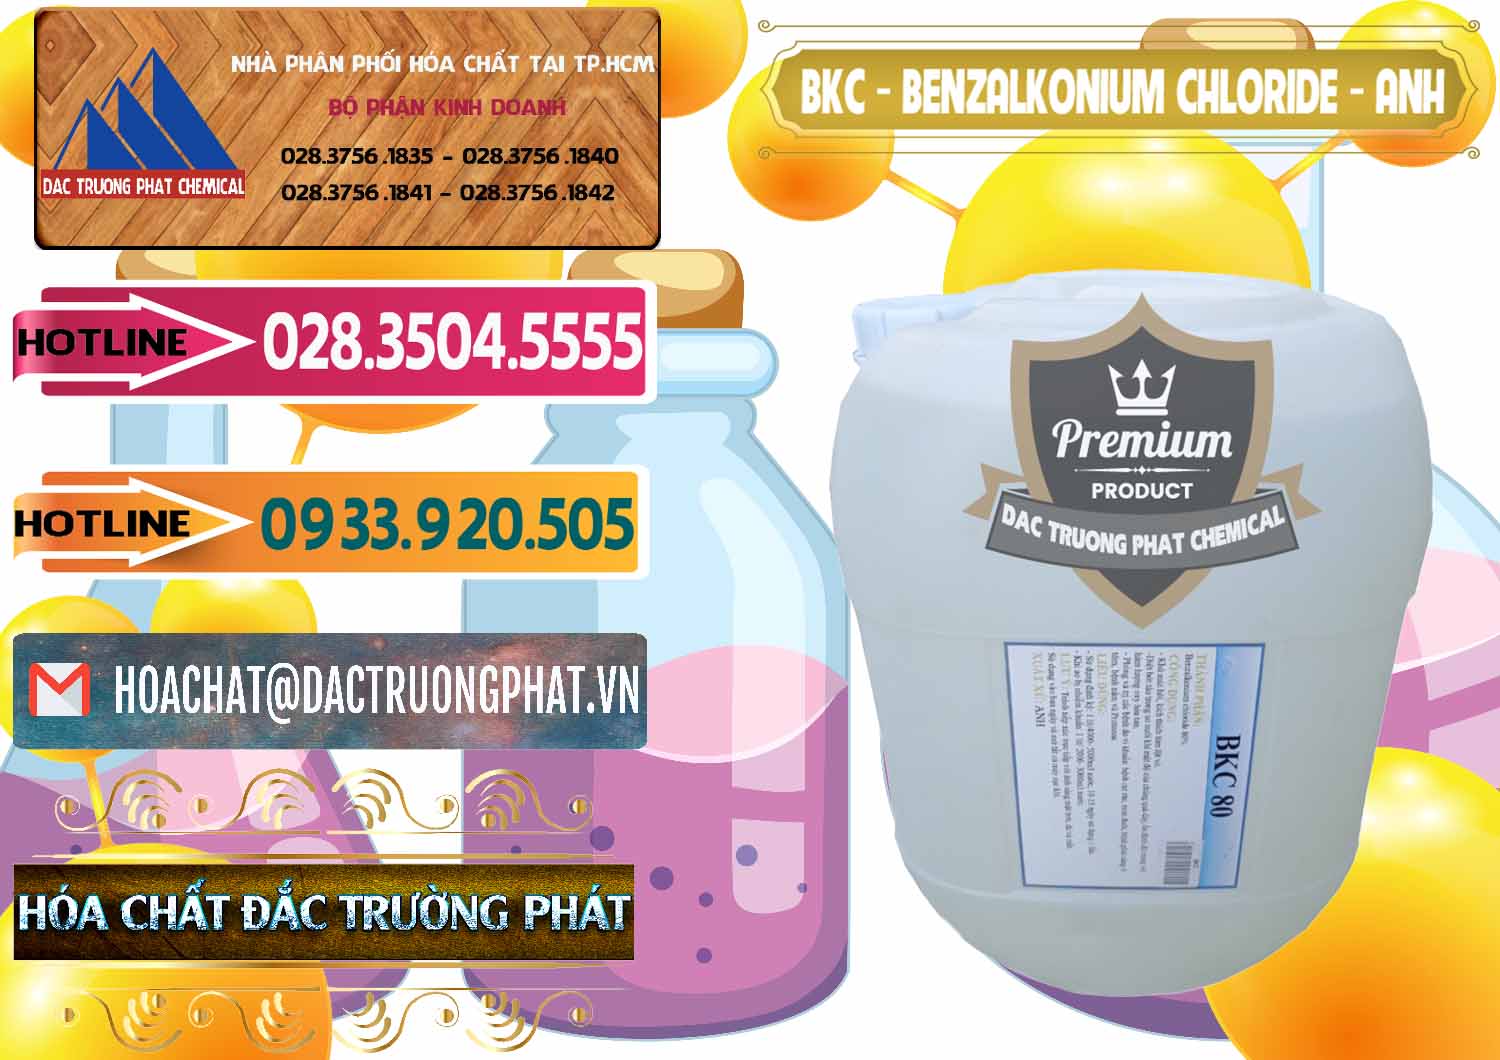 Cty chuyên kinh doanh - bán BKC - Benzalkonium Chloride Anh Quốc Uk Kingdoms - 0415 - Cung cấp _ phân phối hóa chất tại TP.HCM - dactruongphat.vn